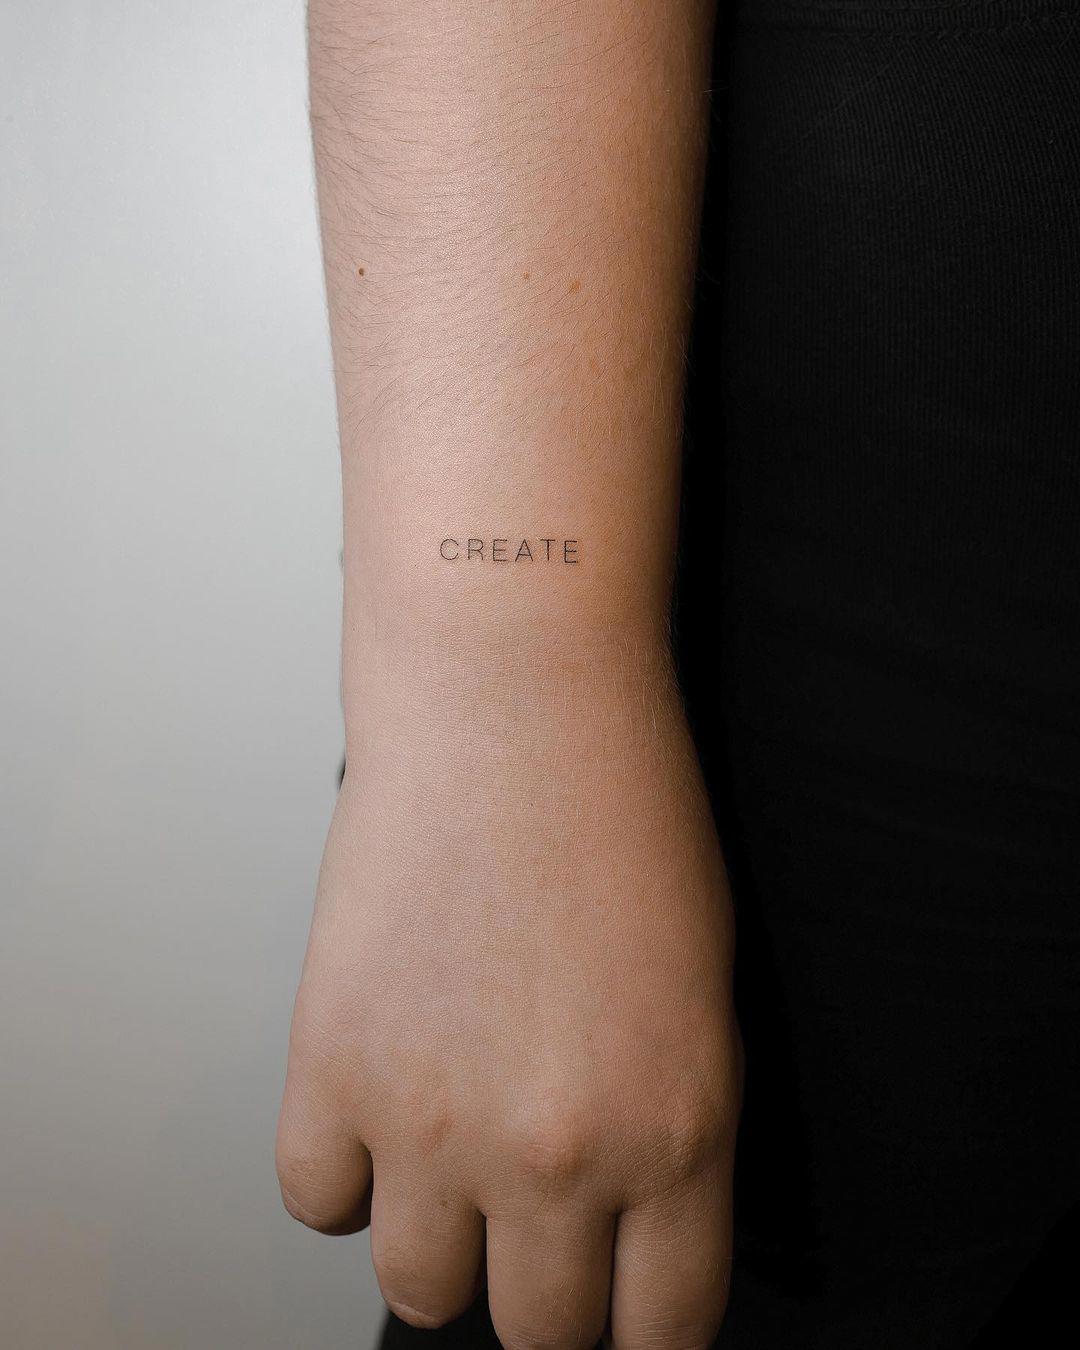 La palabra 'create' tatuada en mayúsculas